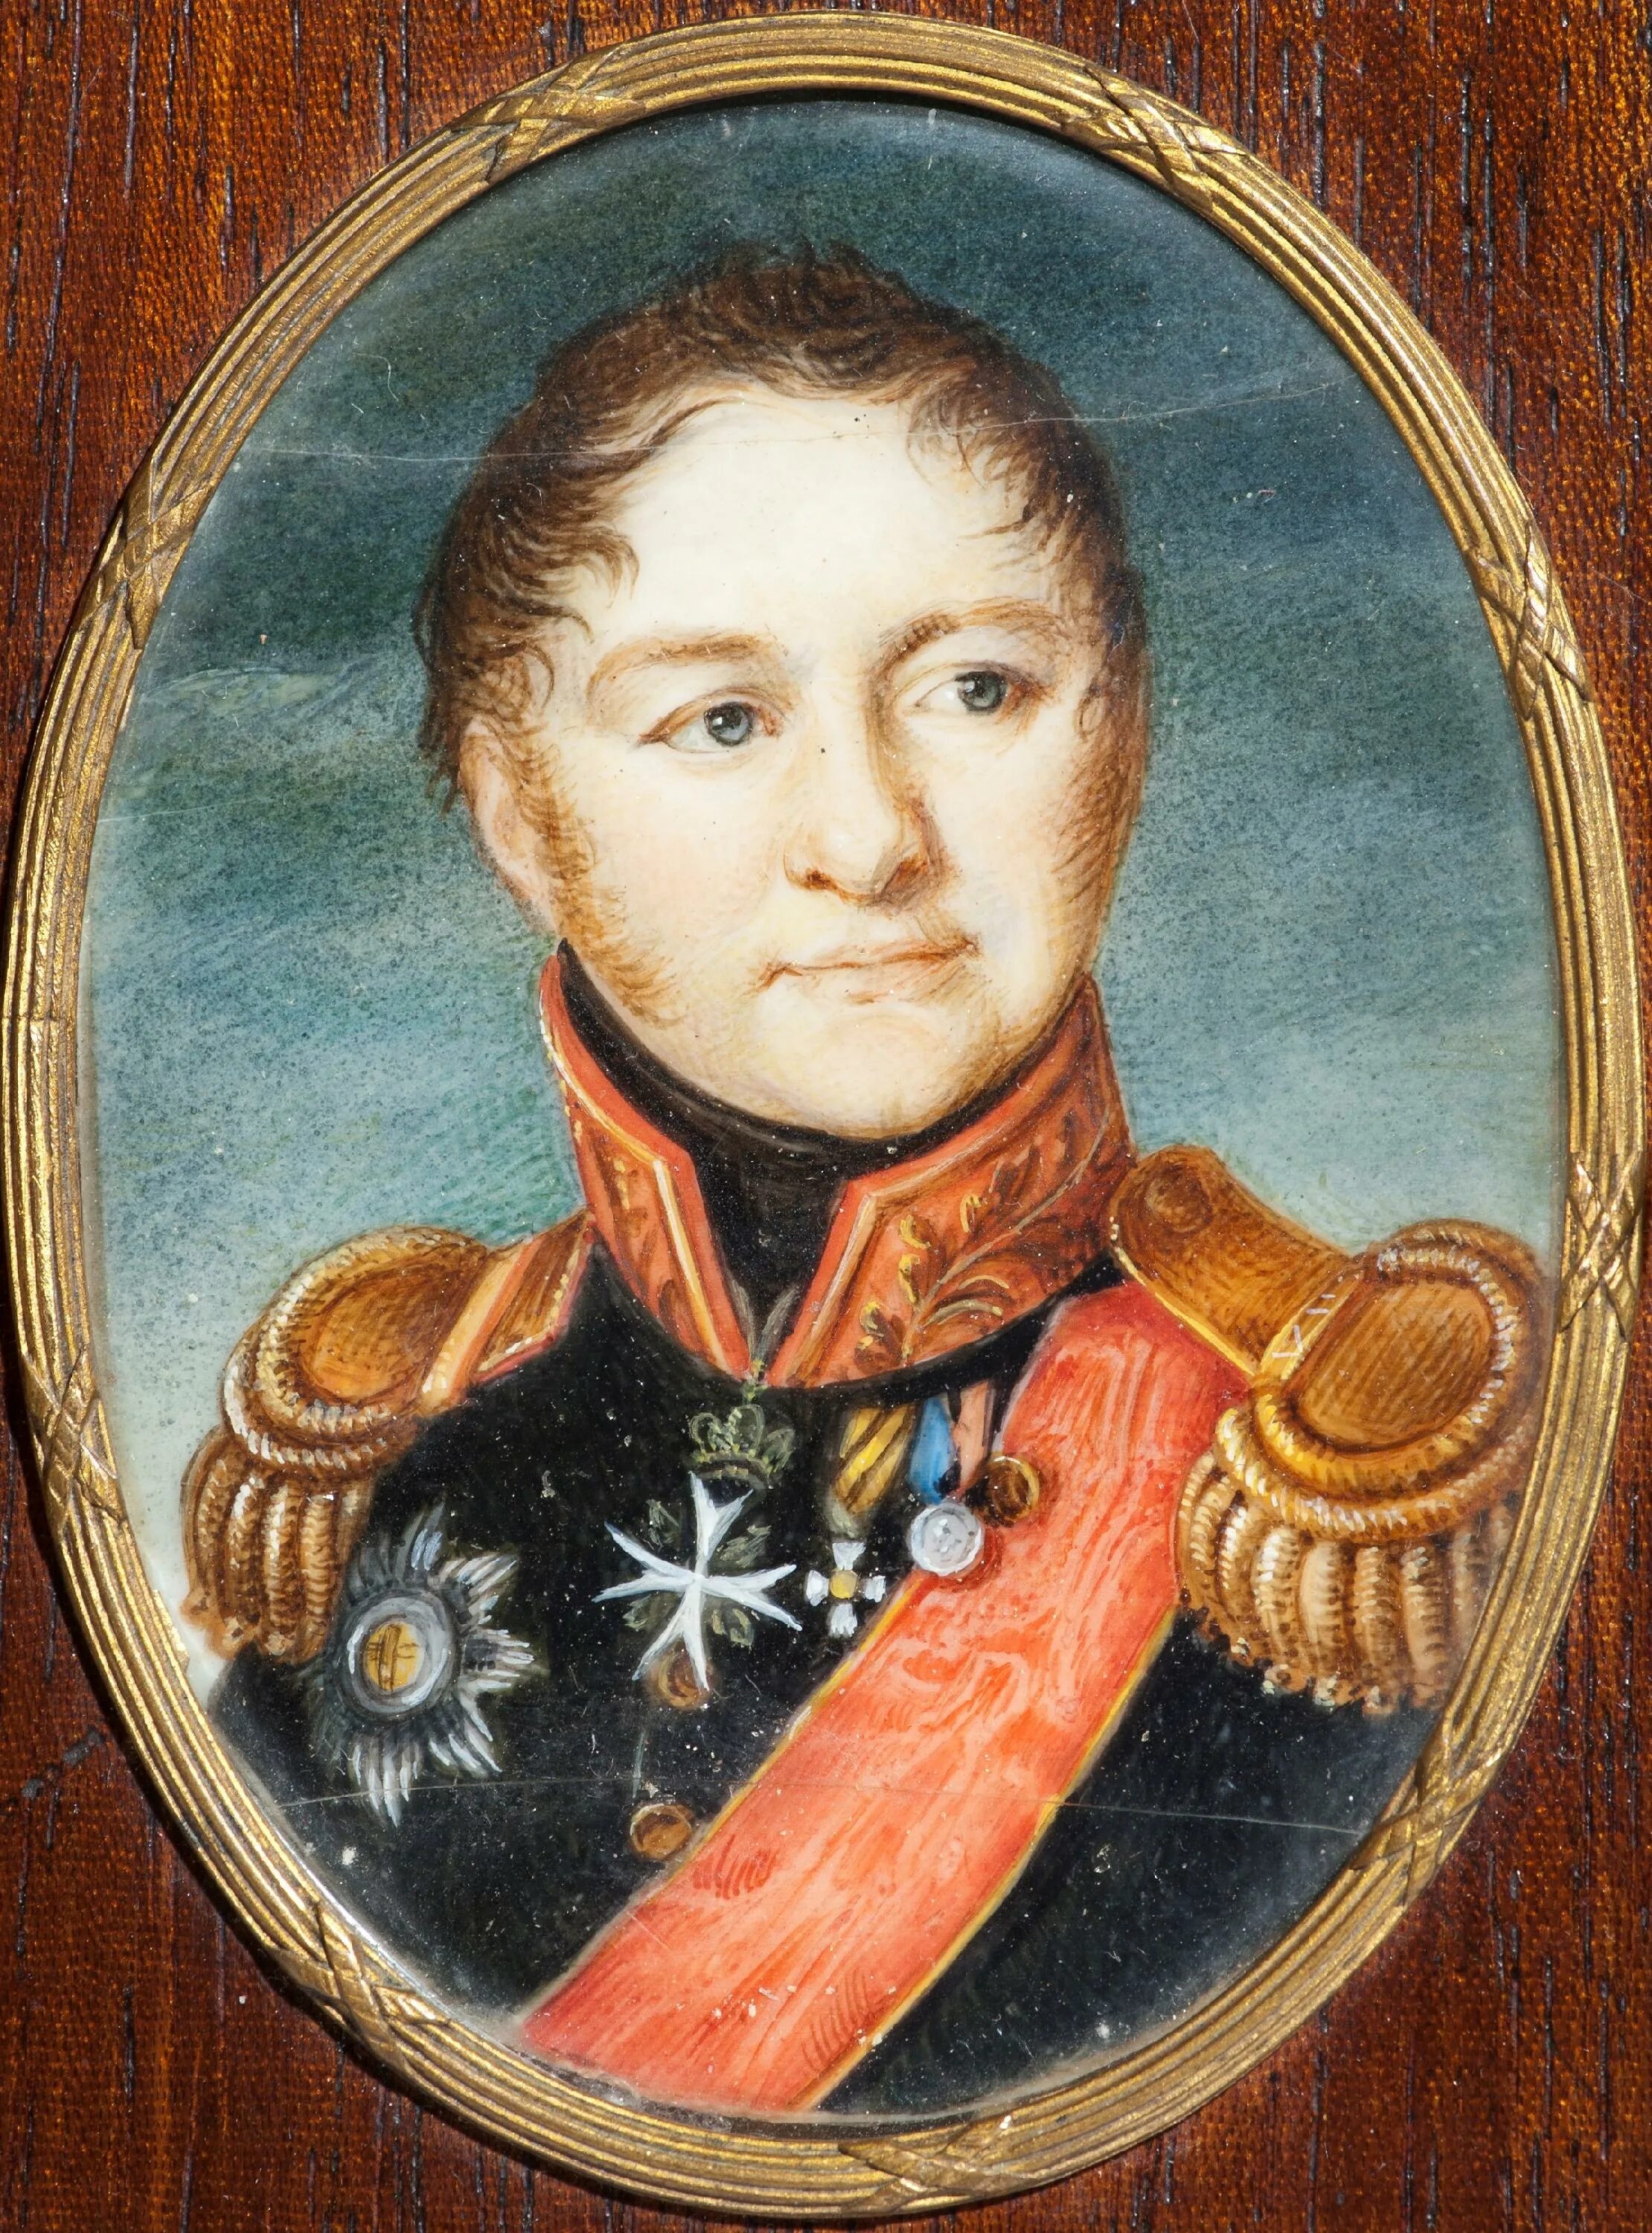 Тучкова кунцевская. Тучков портрет 1812.